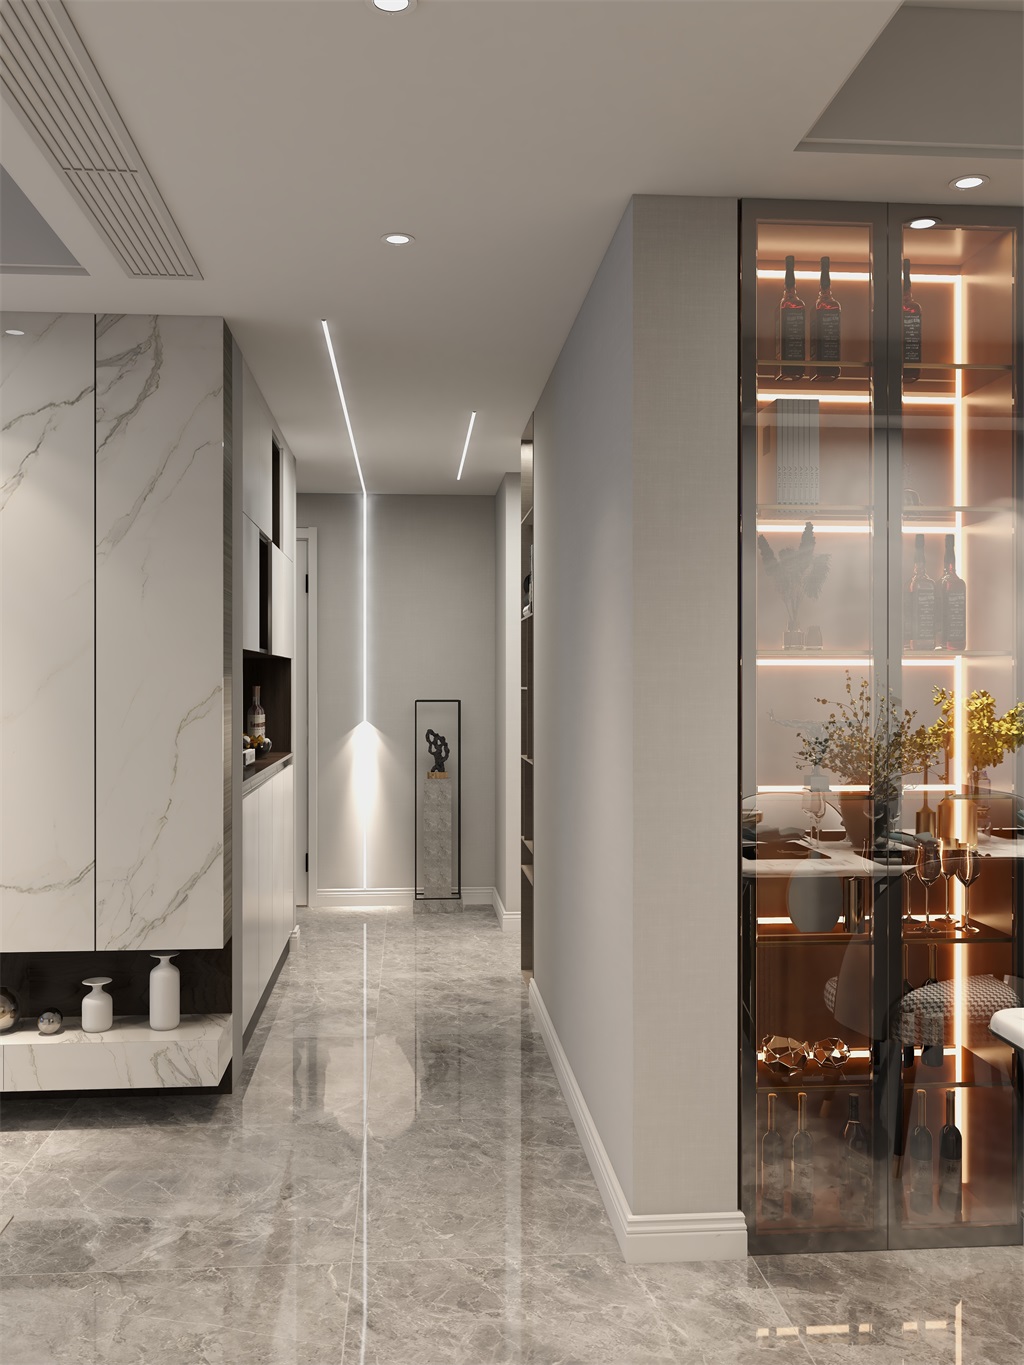 廊道线型灯饰结合简单大气的墙地面，彰显出现代风格的利落干脆，也表达了简约不失格调的生活态度。.jpg